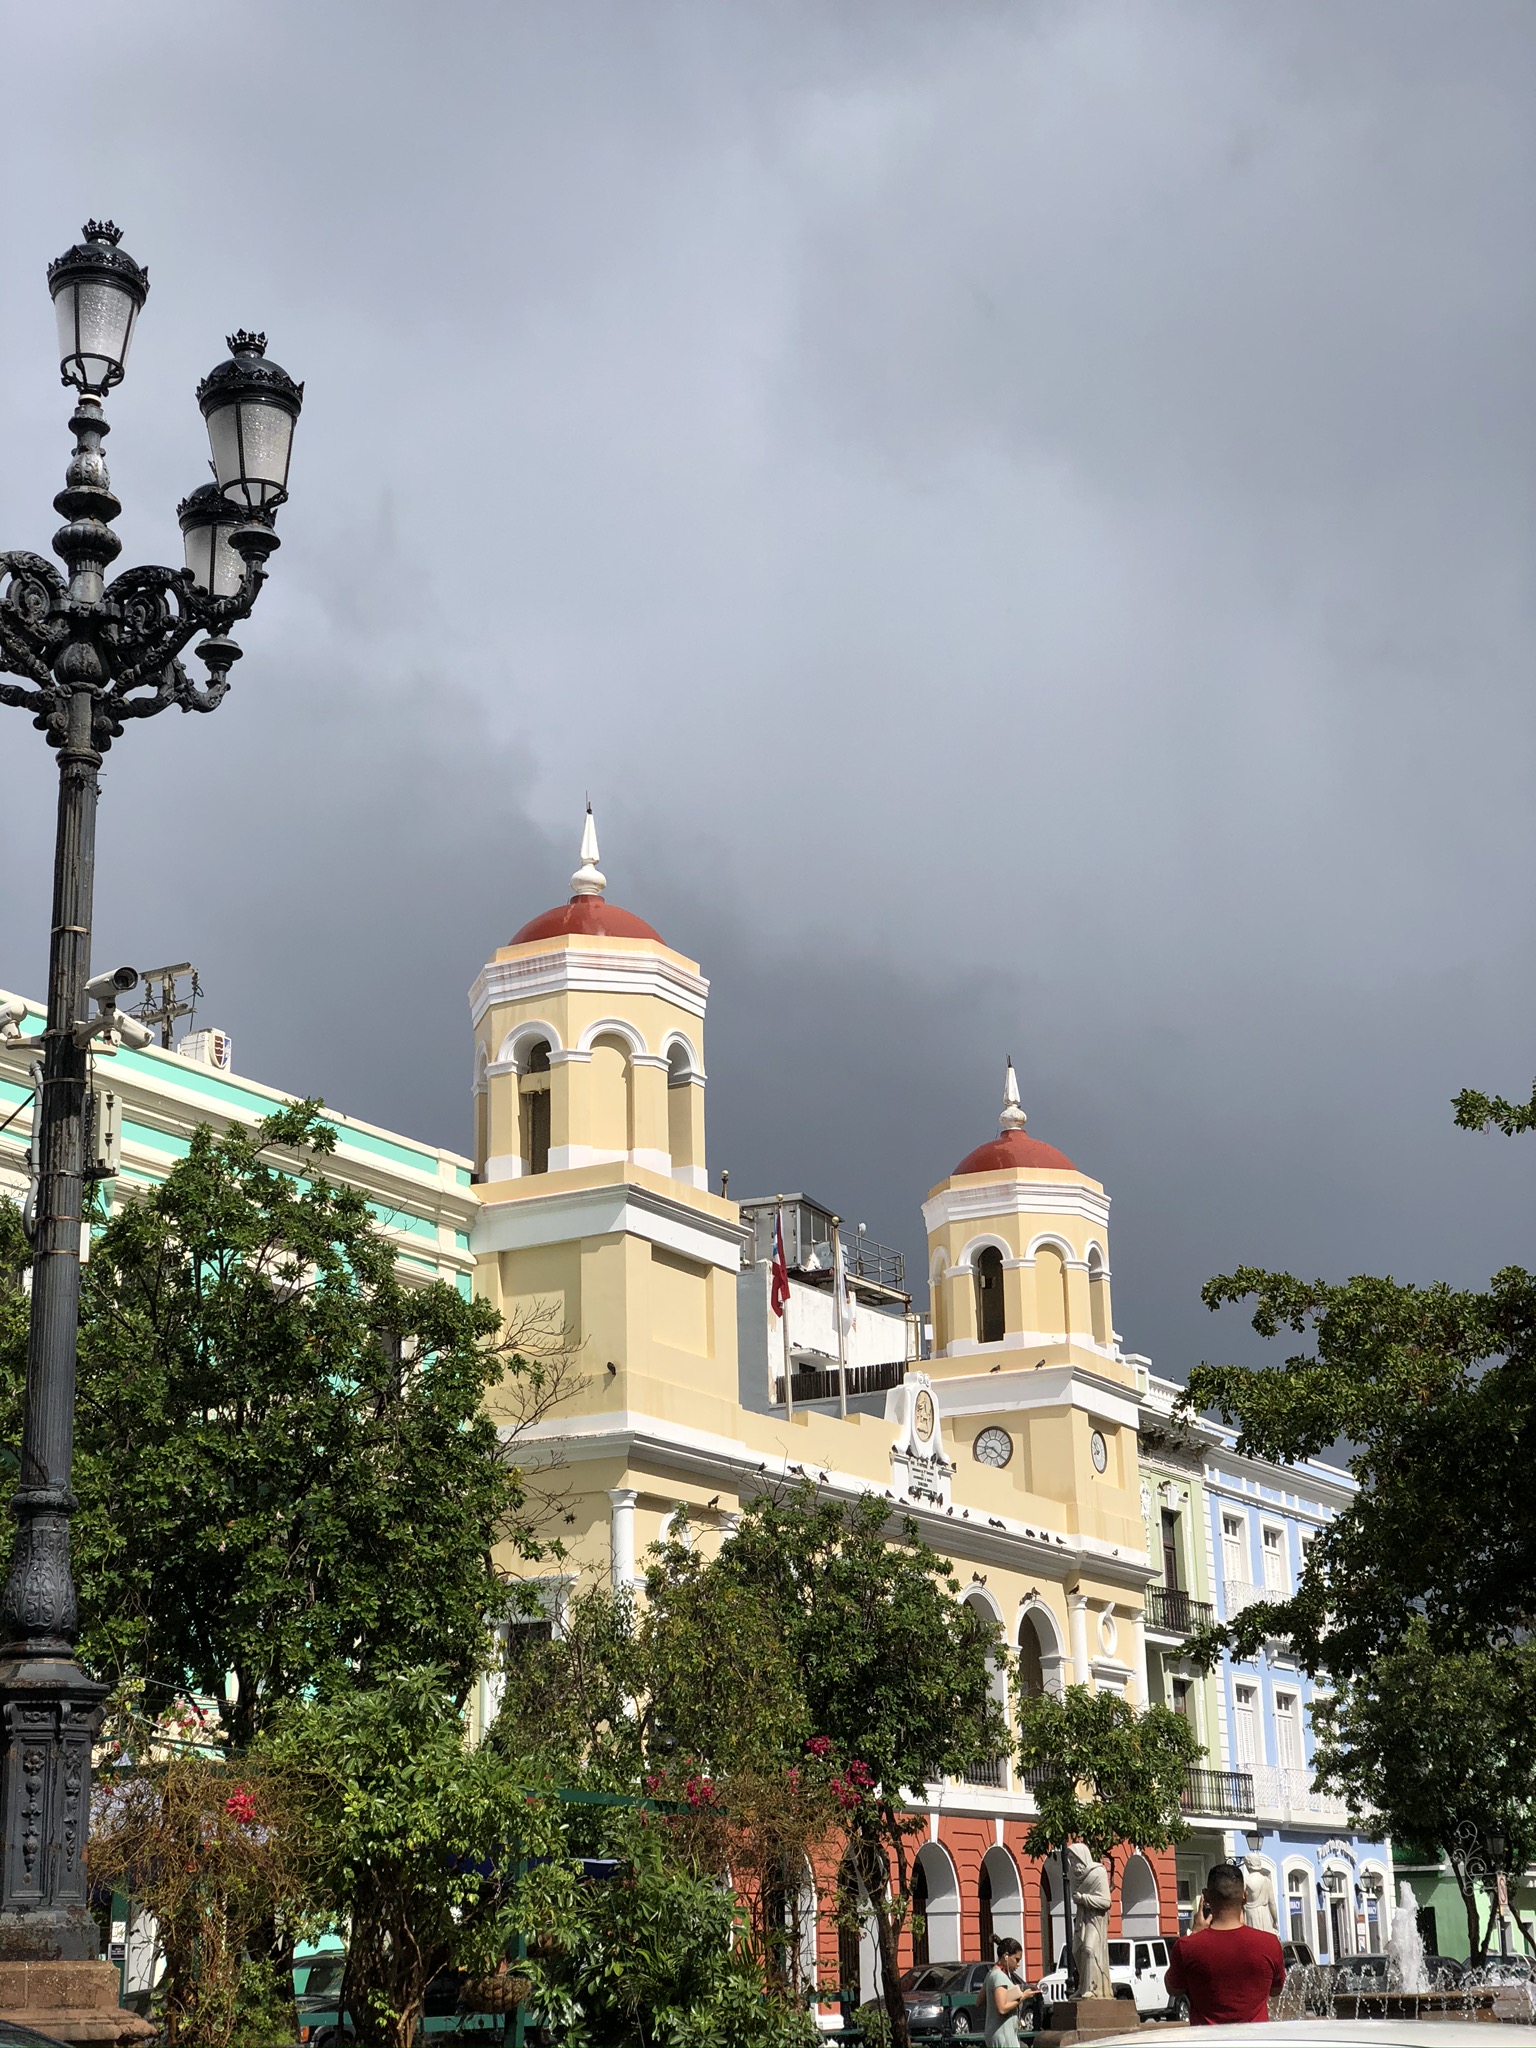 Plaza des Armas sous un nuage gris